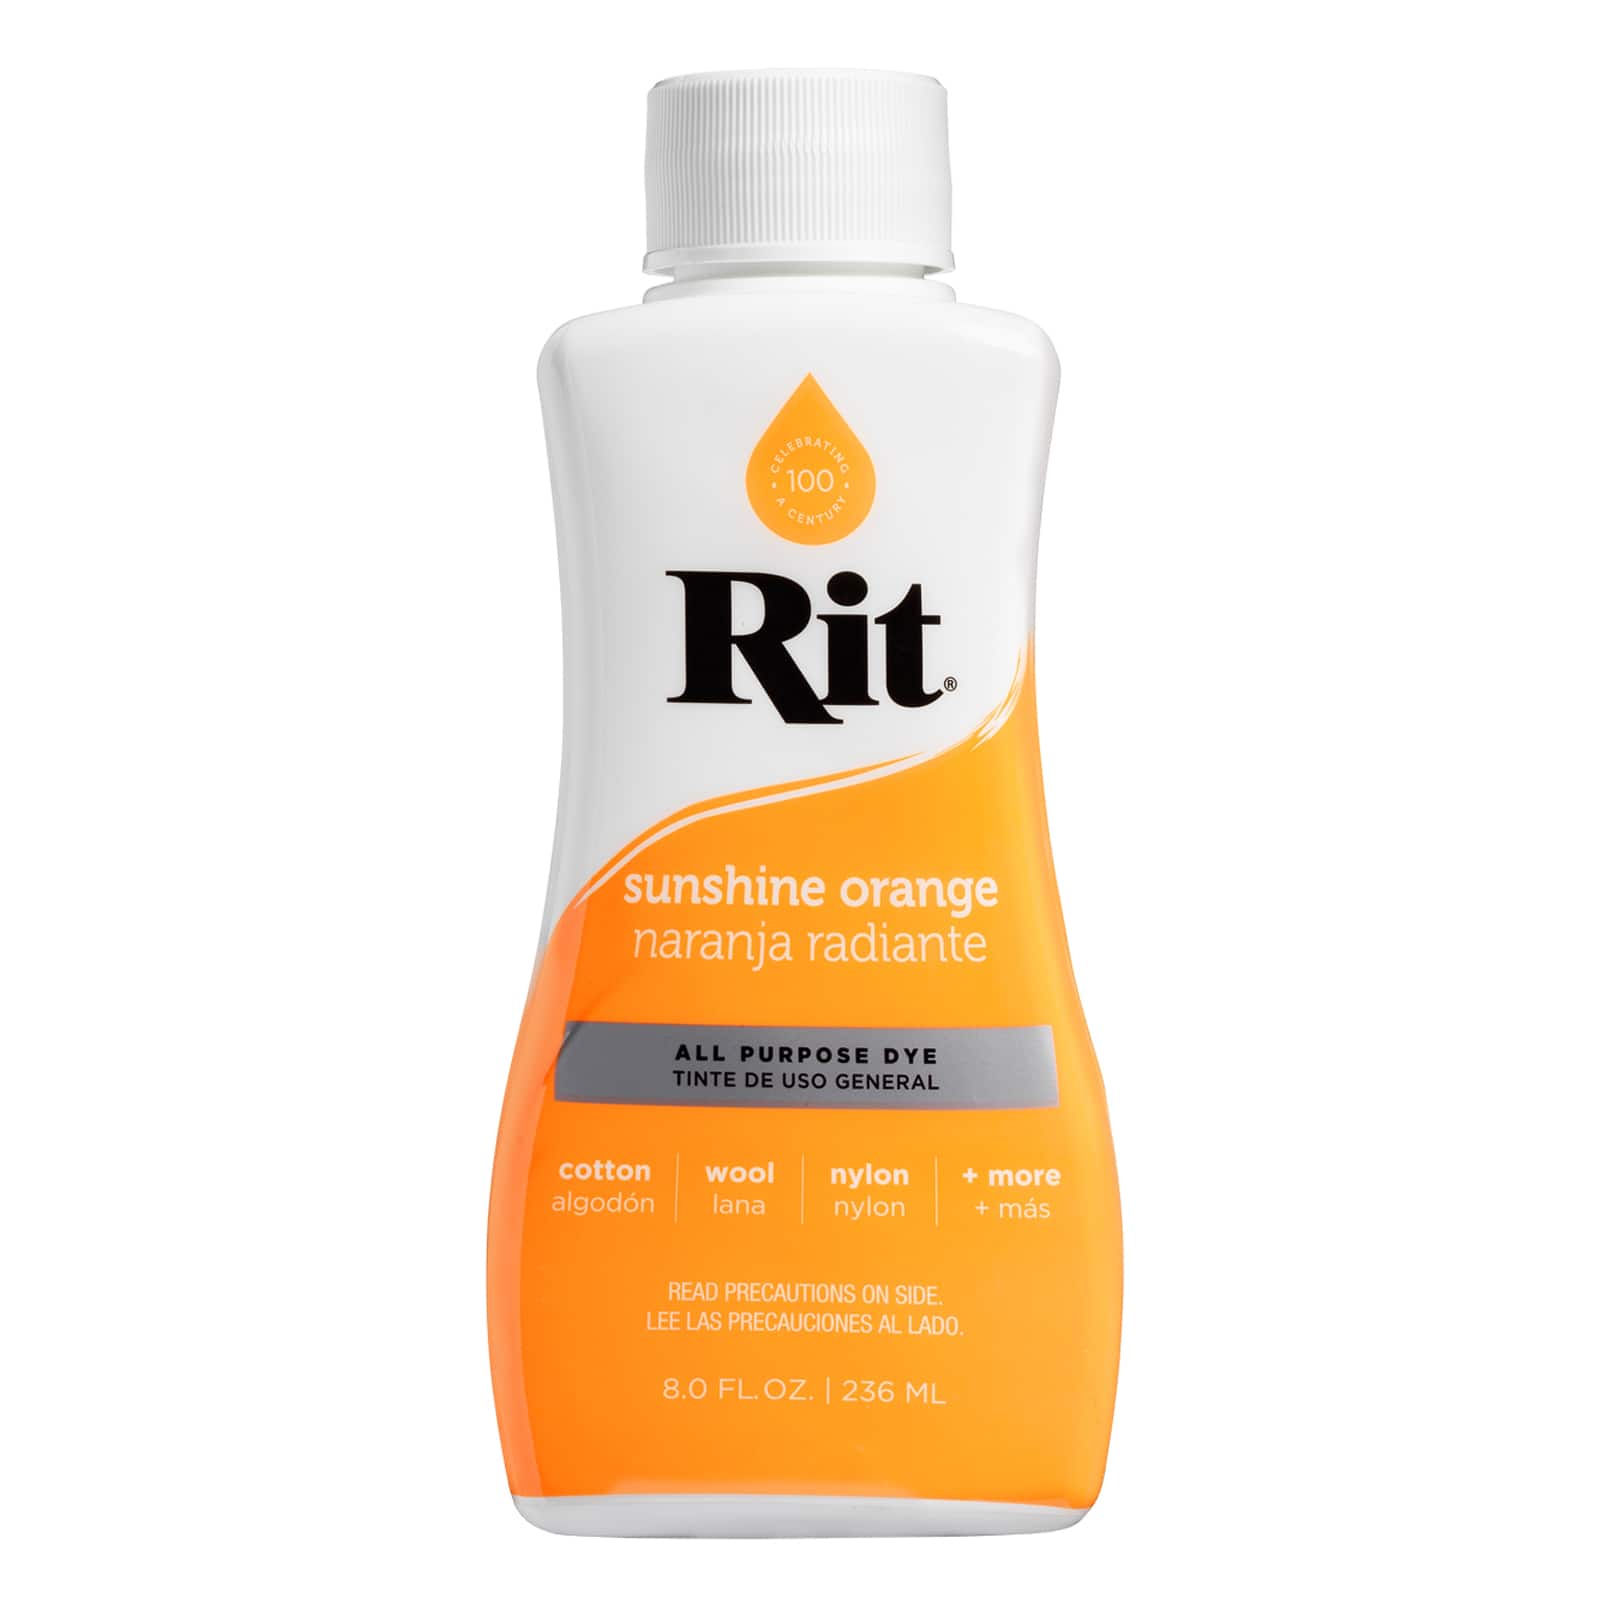 Rit Dye Liquid, Apple Green - 8 fl oz bottle